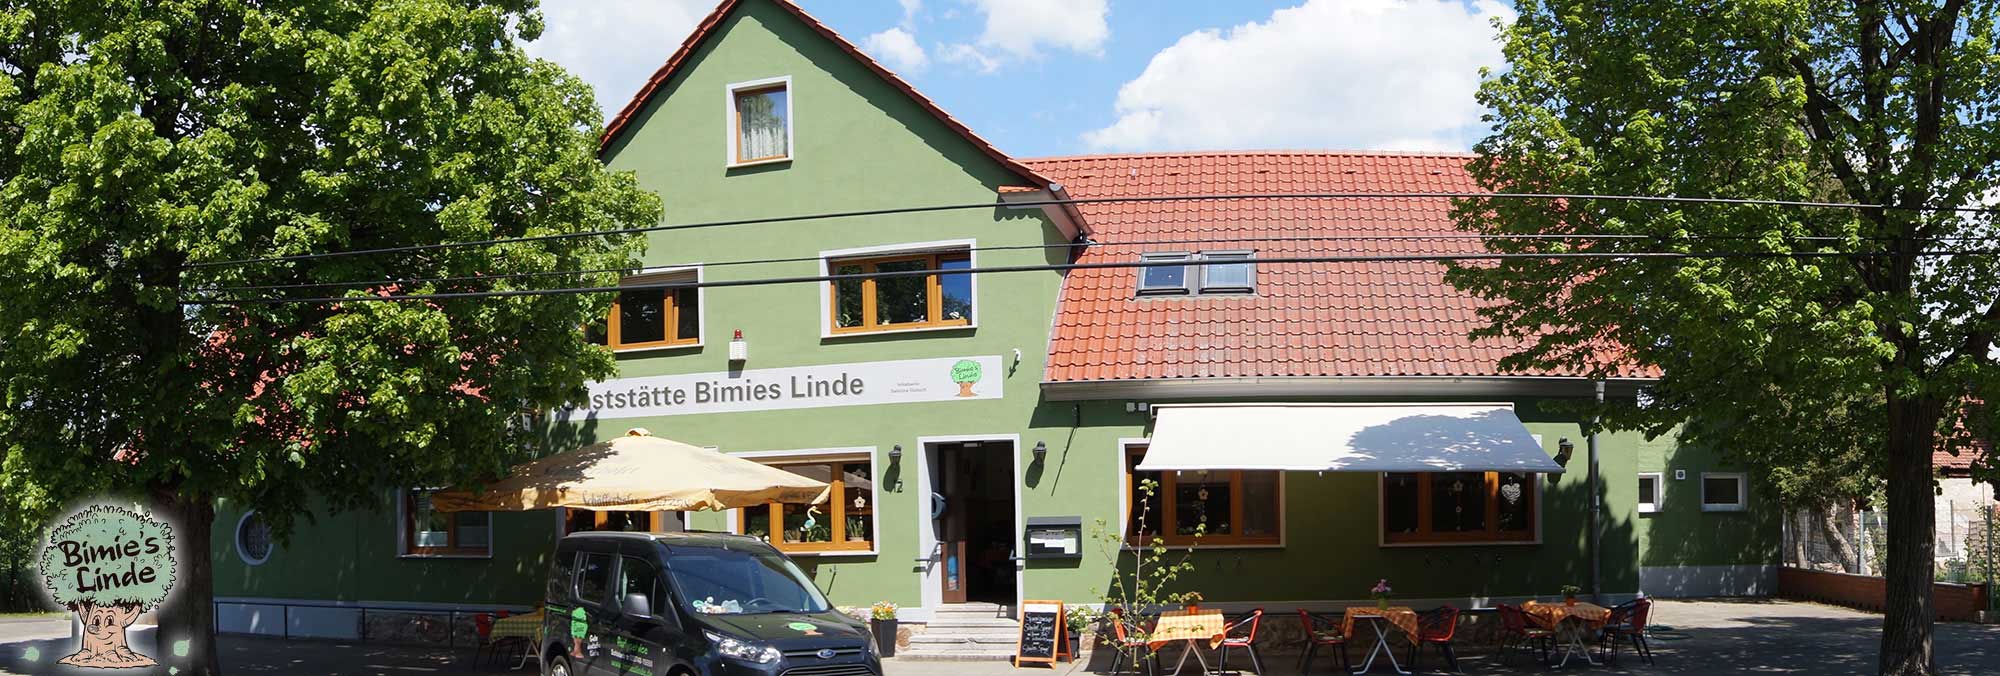 Bimies Linde - Gaststätte, Partyservice, Mühlenfließ, Treuenbrietzen